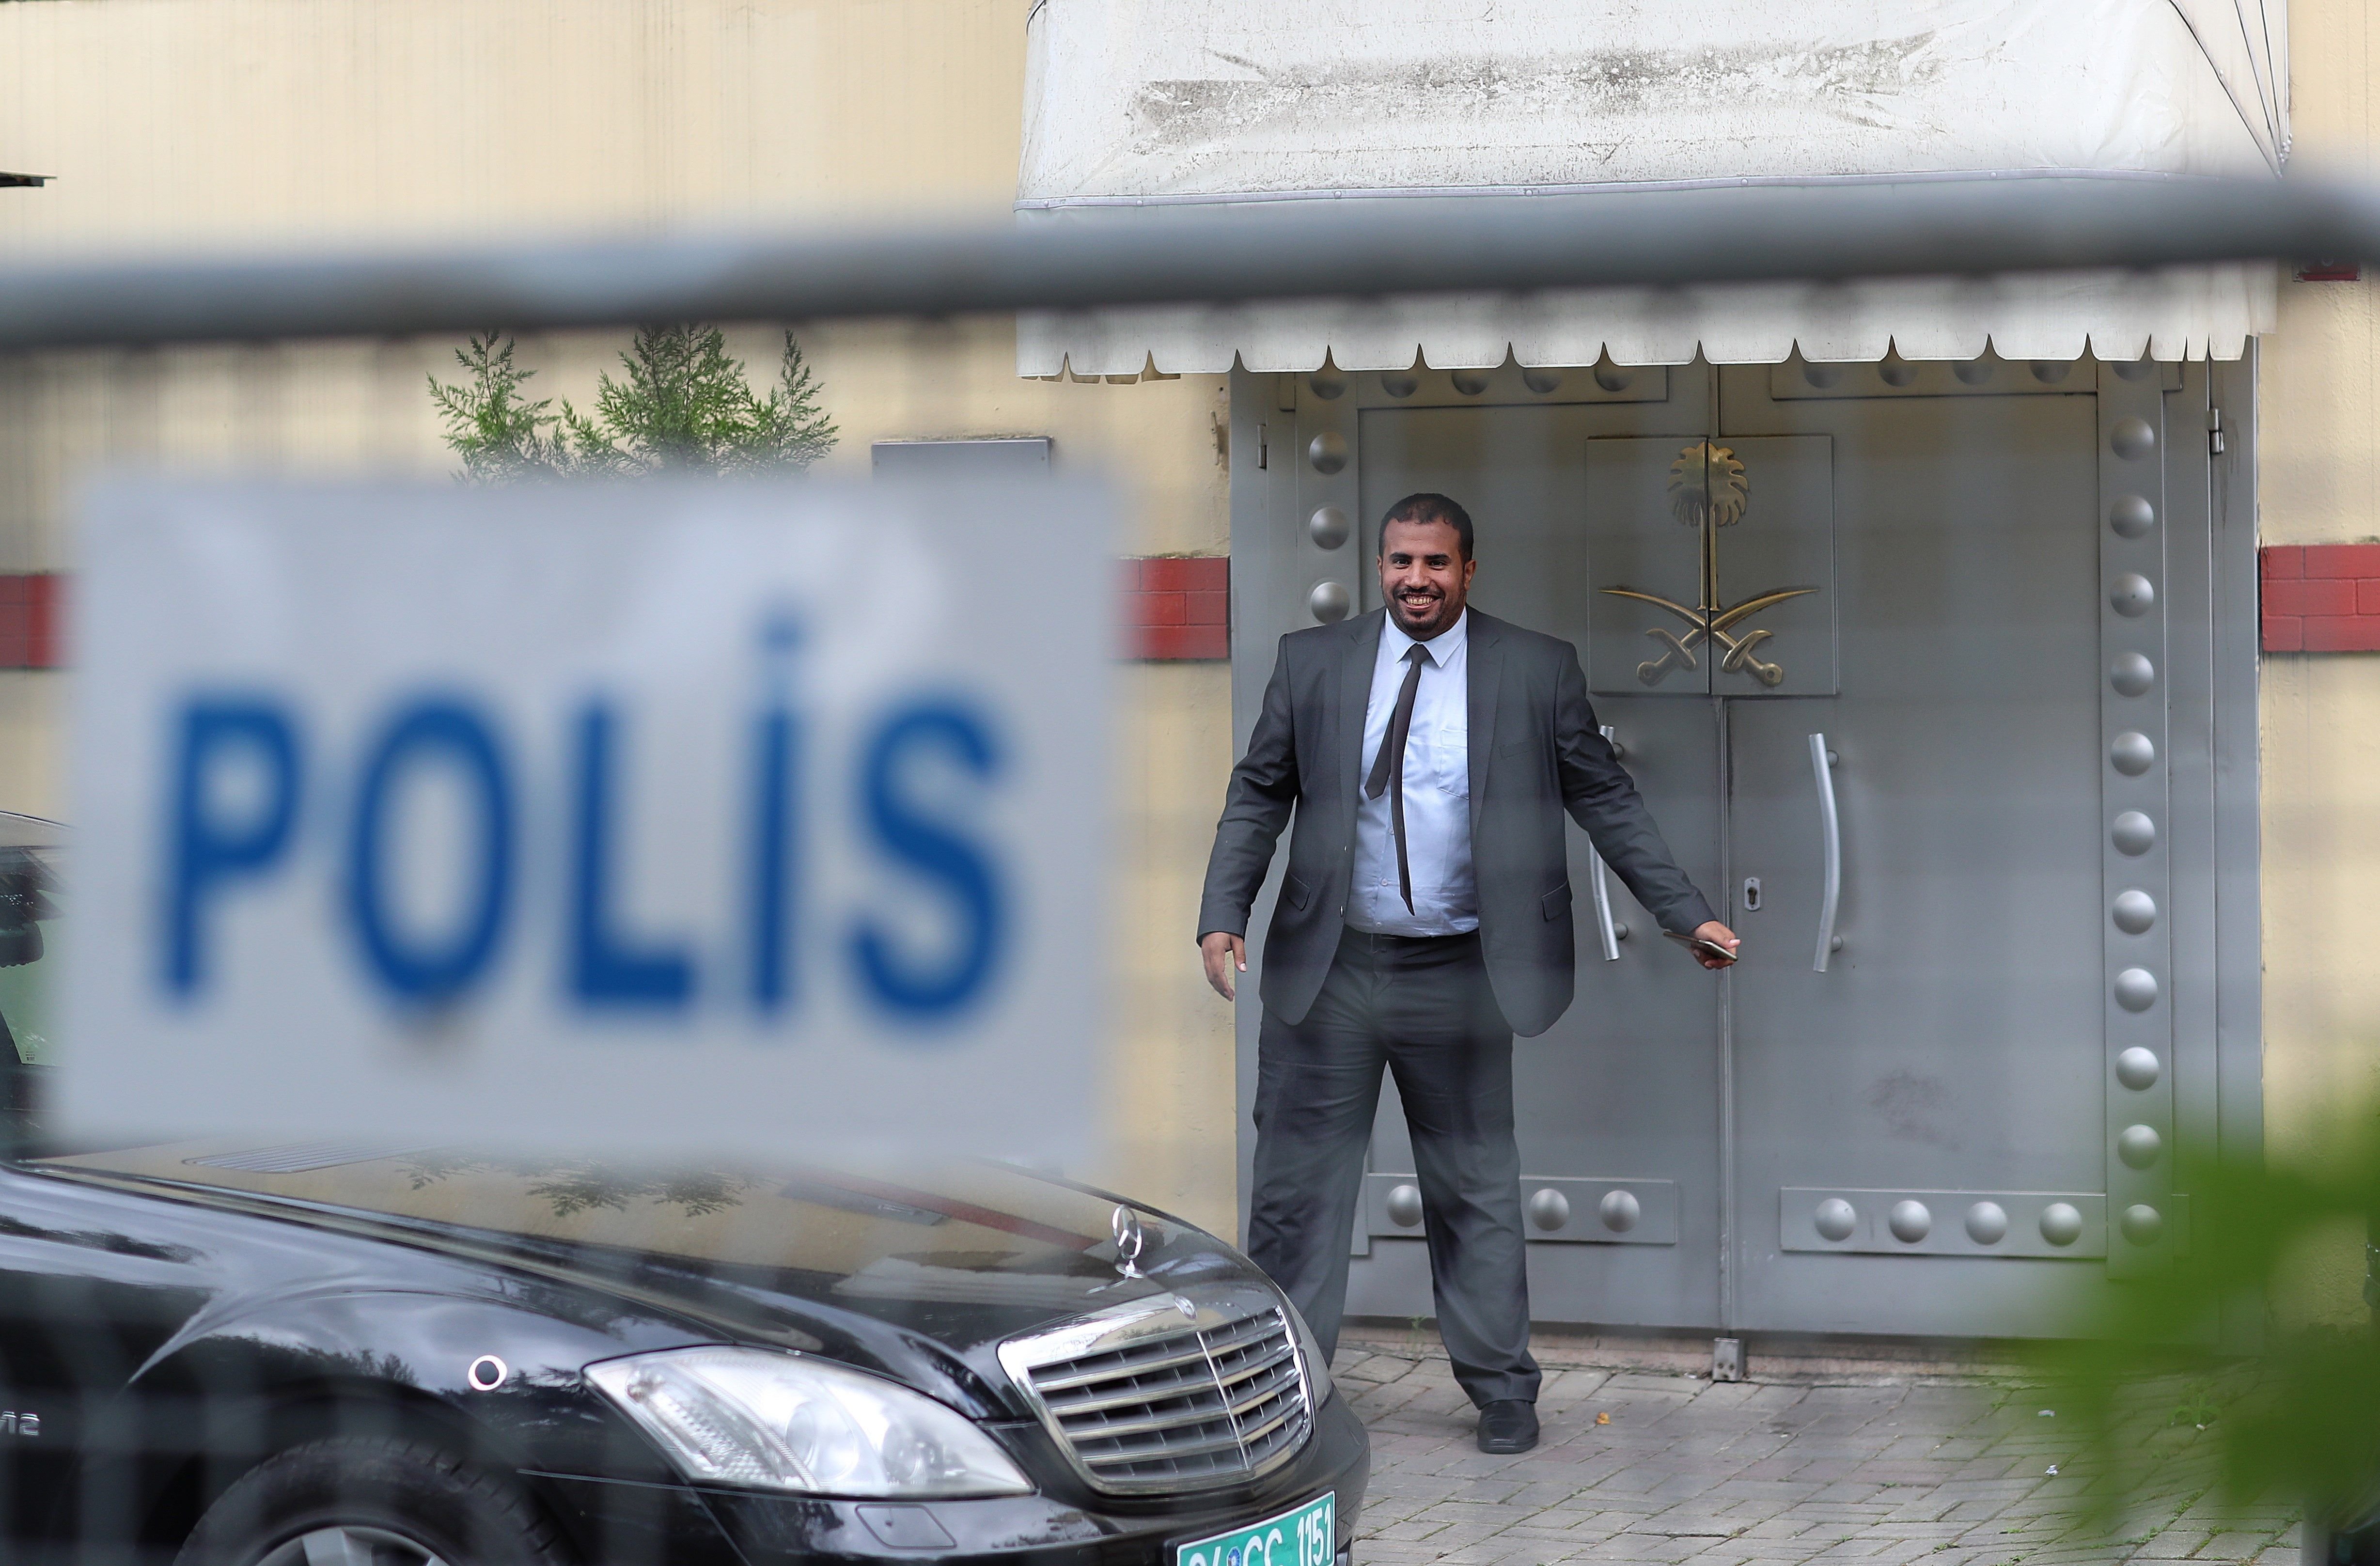 El periodista Khashoggi, assassinat al consolat saudita a Istanbul?